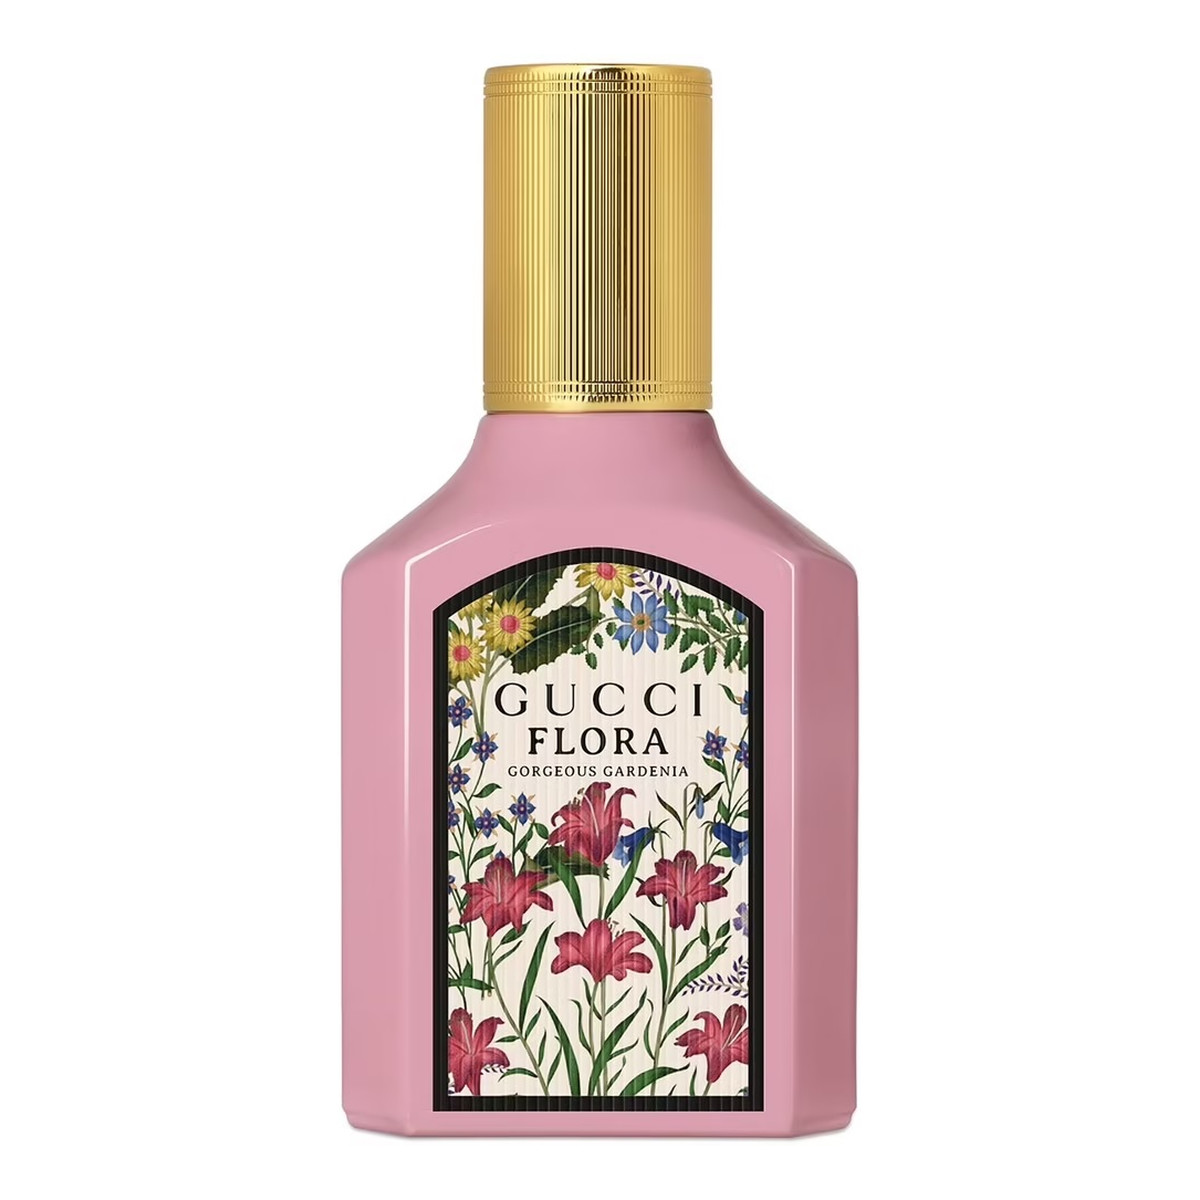 Gucci Flora Gorgeous Gardenia Woda perfumowana spray 30ml